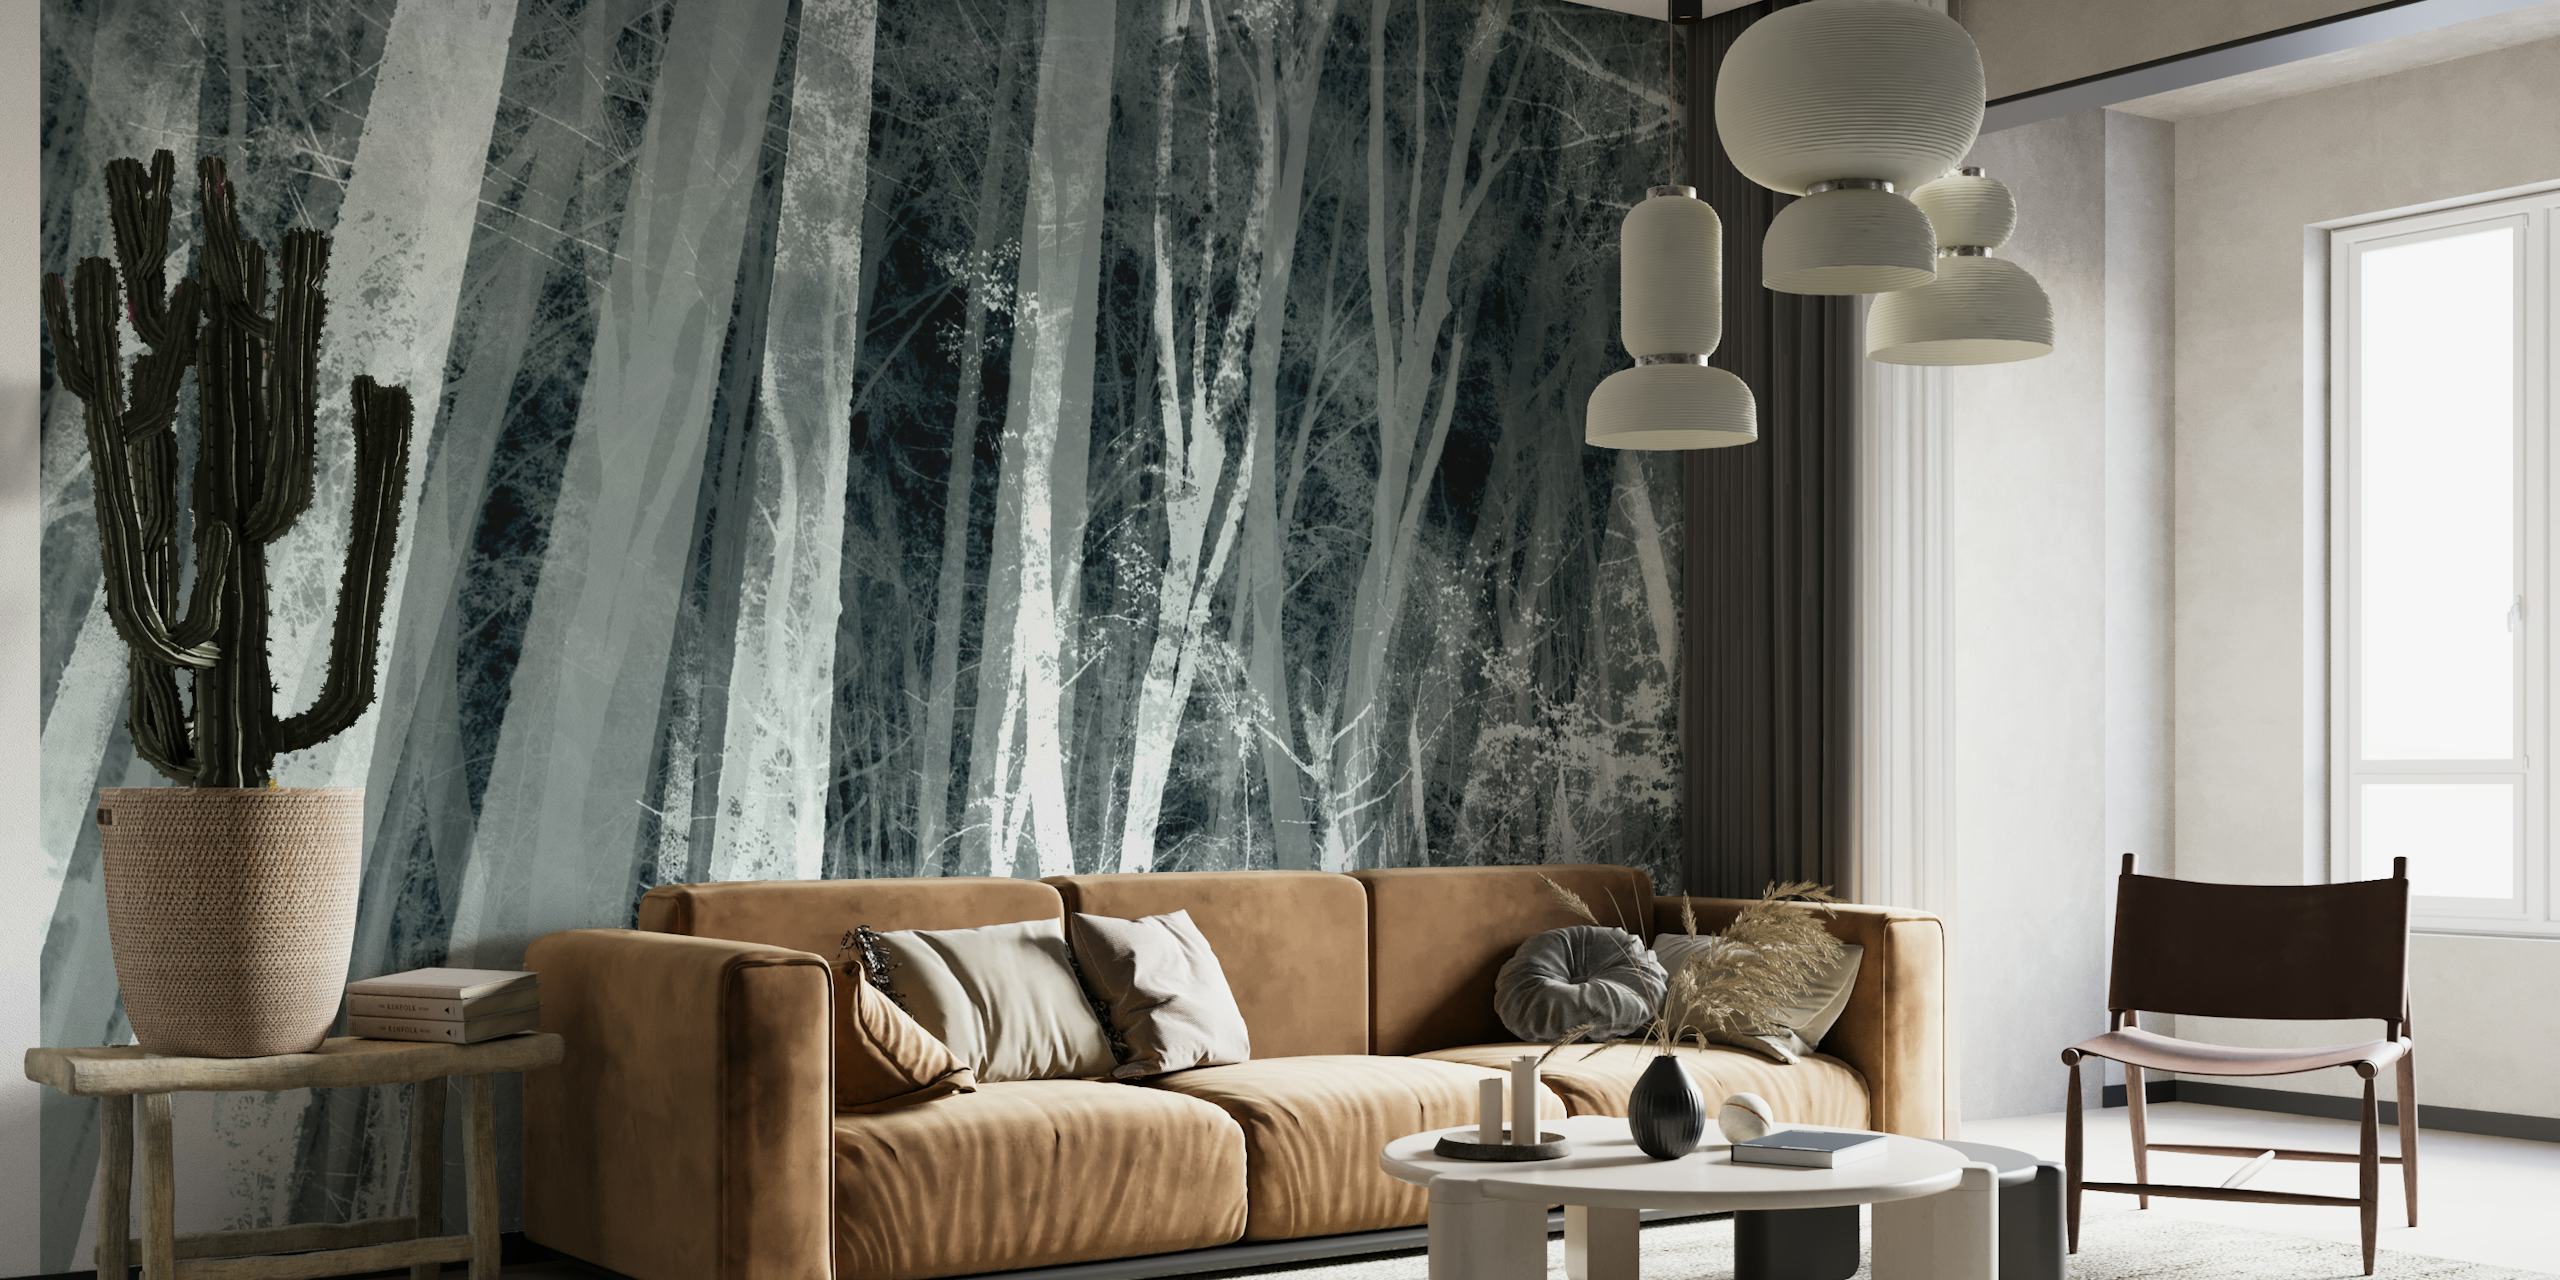 Zidni mural šume u sivim tonovima, s visokim drvećem i maglovitom atmosferom.